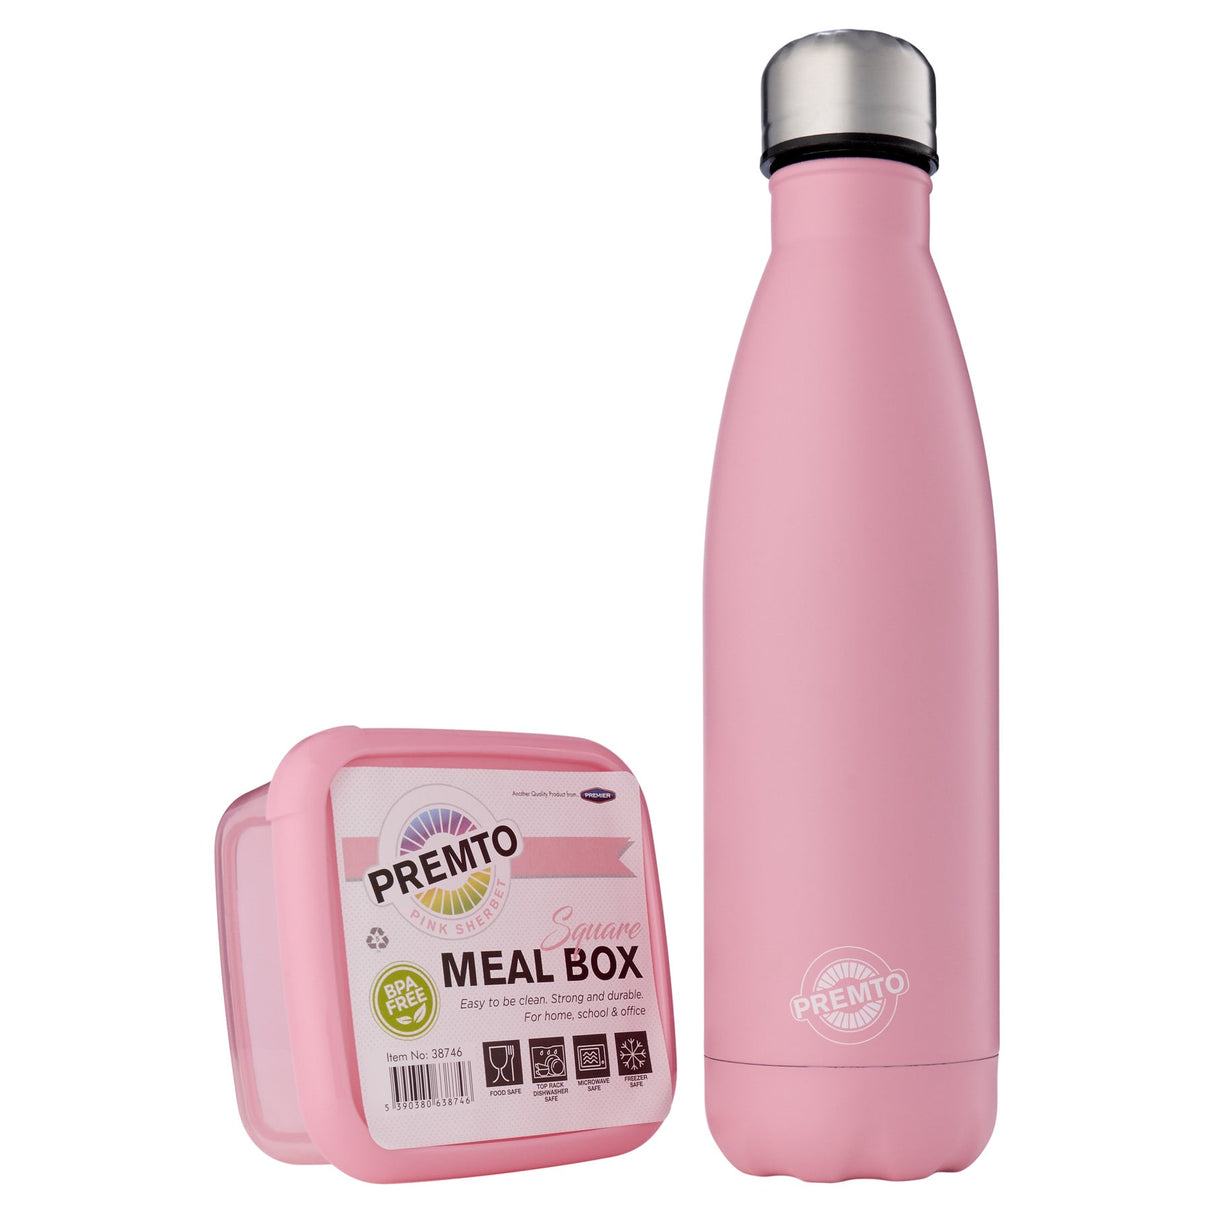 Premto Snack Box & Stainless Steel Bottle - Pastel - Pink Sherbet-Lunch Sets-Premto|StationeryShop.co.uk